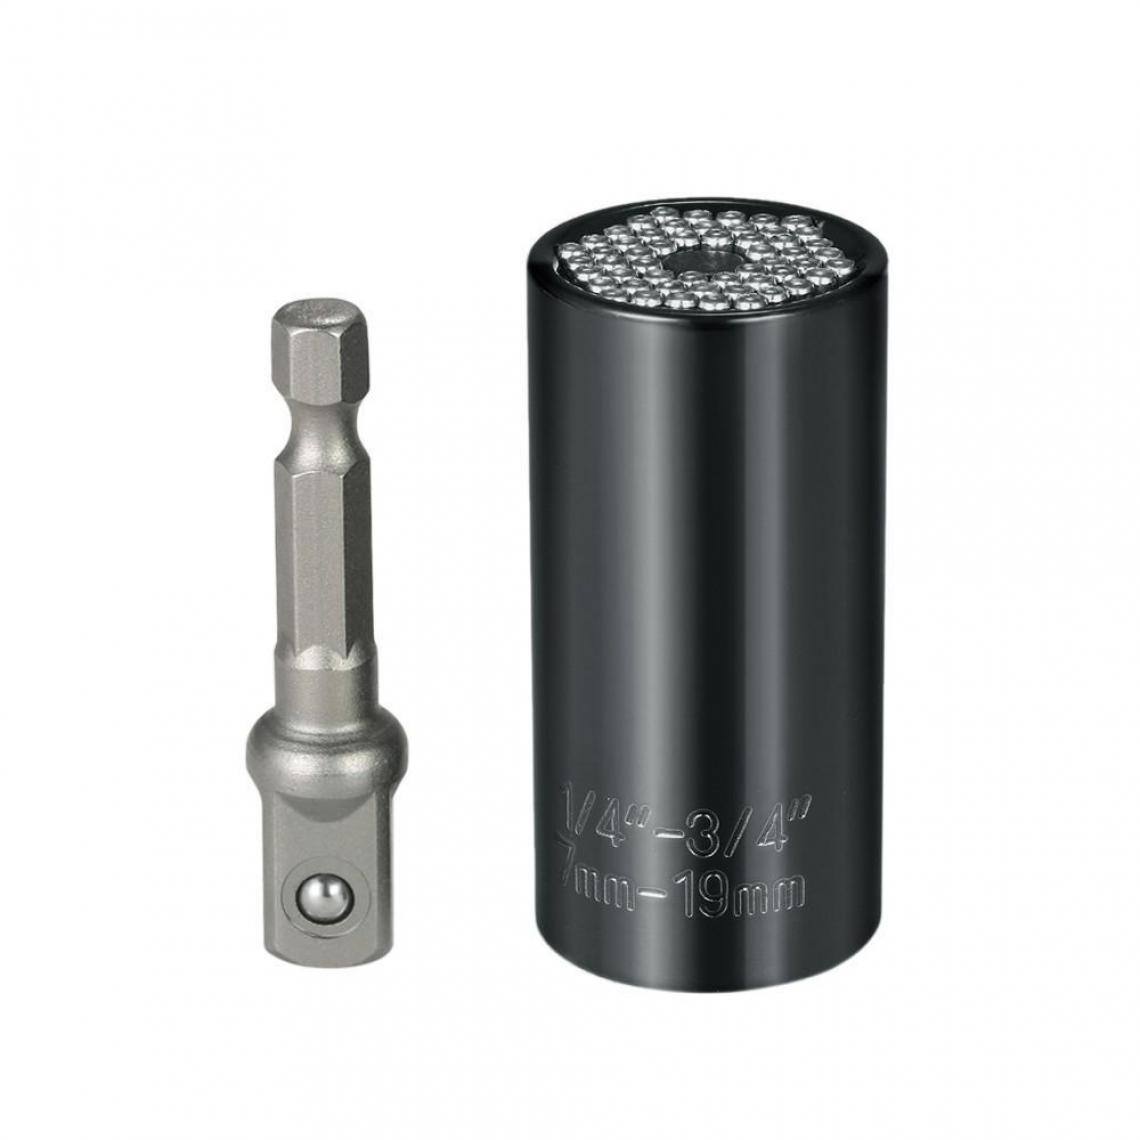 Justgreenbox - 7mm-19mm multi-fonctionnel douille universelle clé métrique adaptateur de perceuse électrique ensemble outils de réparation professionnels - Clés et douilles